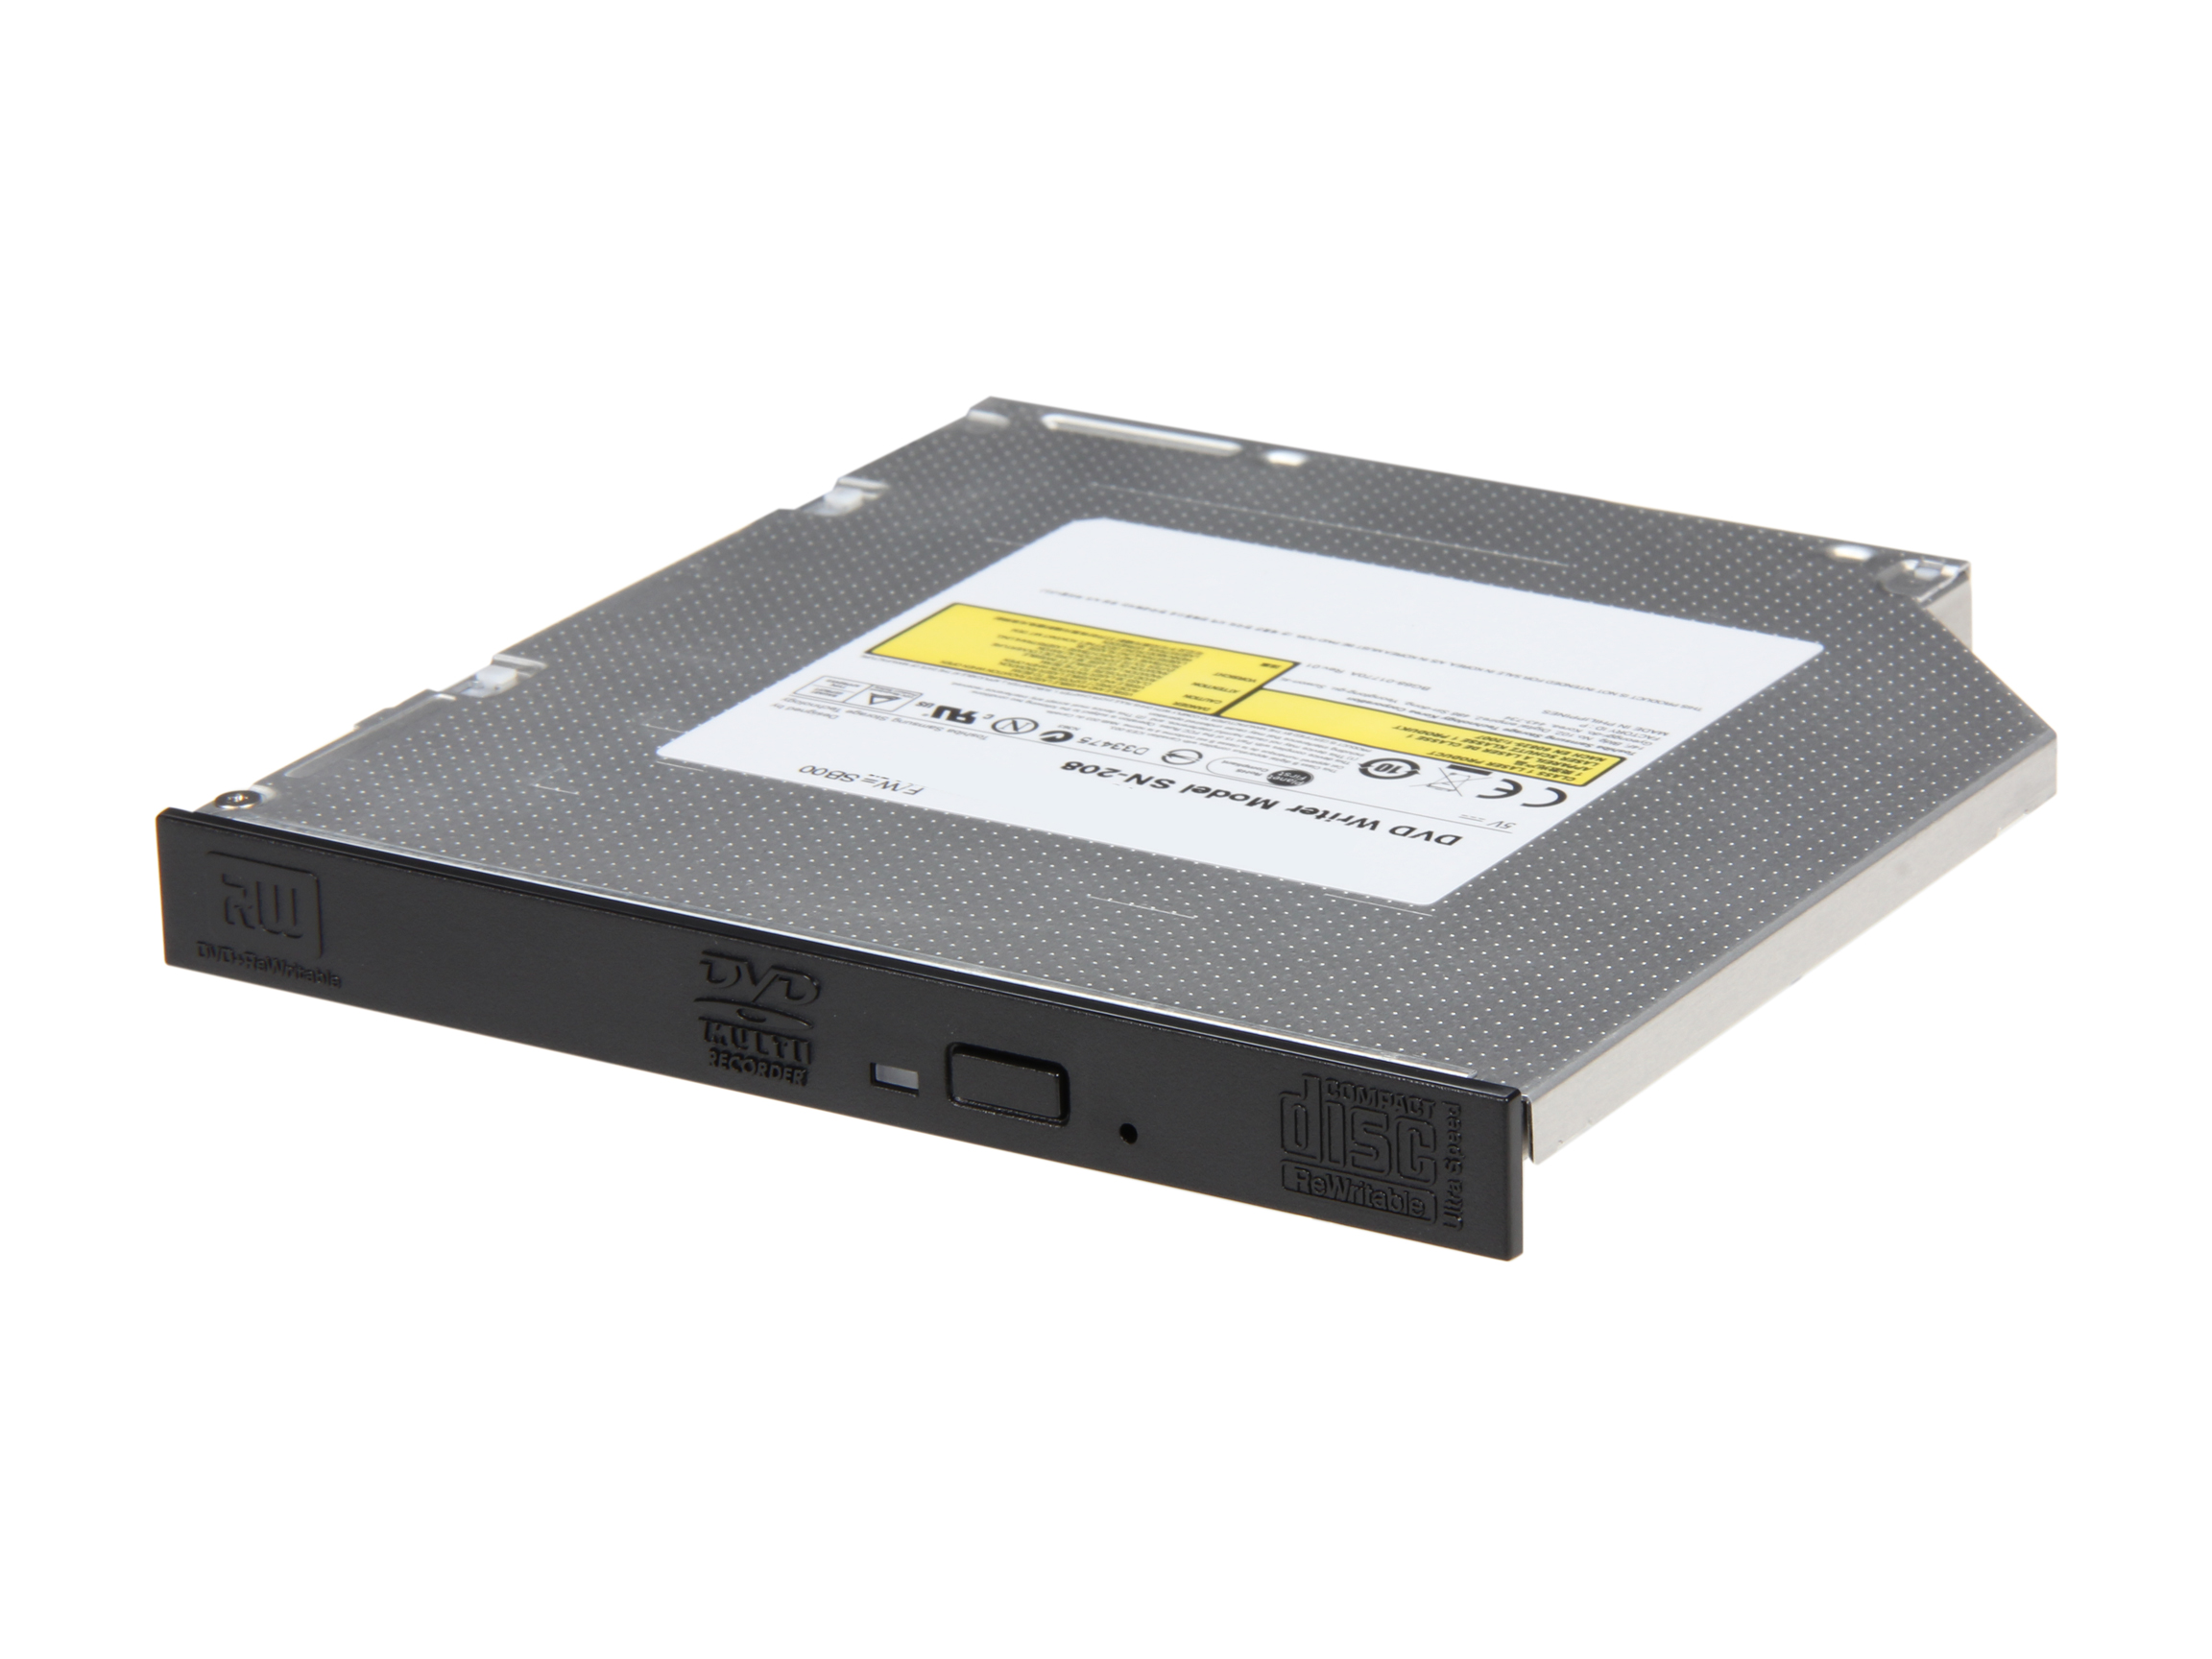 SAMSUNG Model SN 208BB 8X Slim Internal DVD Burner, OEM Package Without Software Black